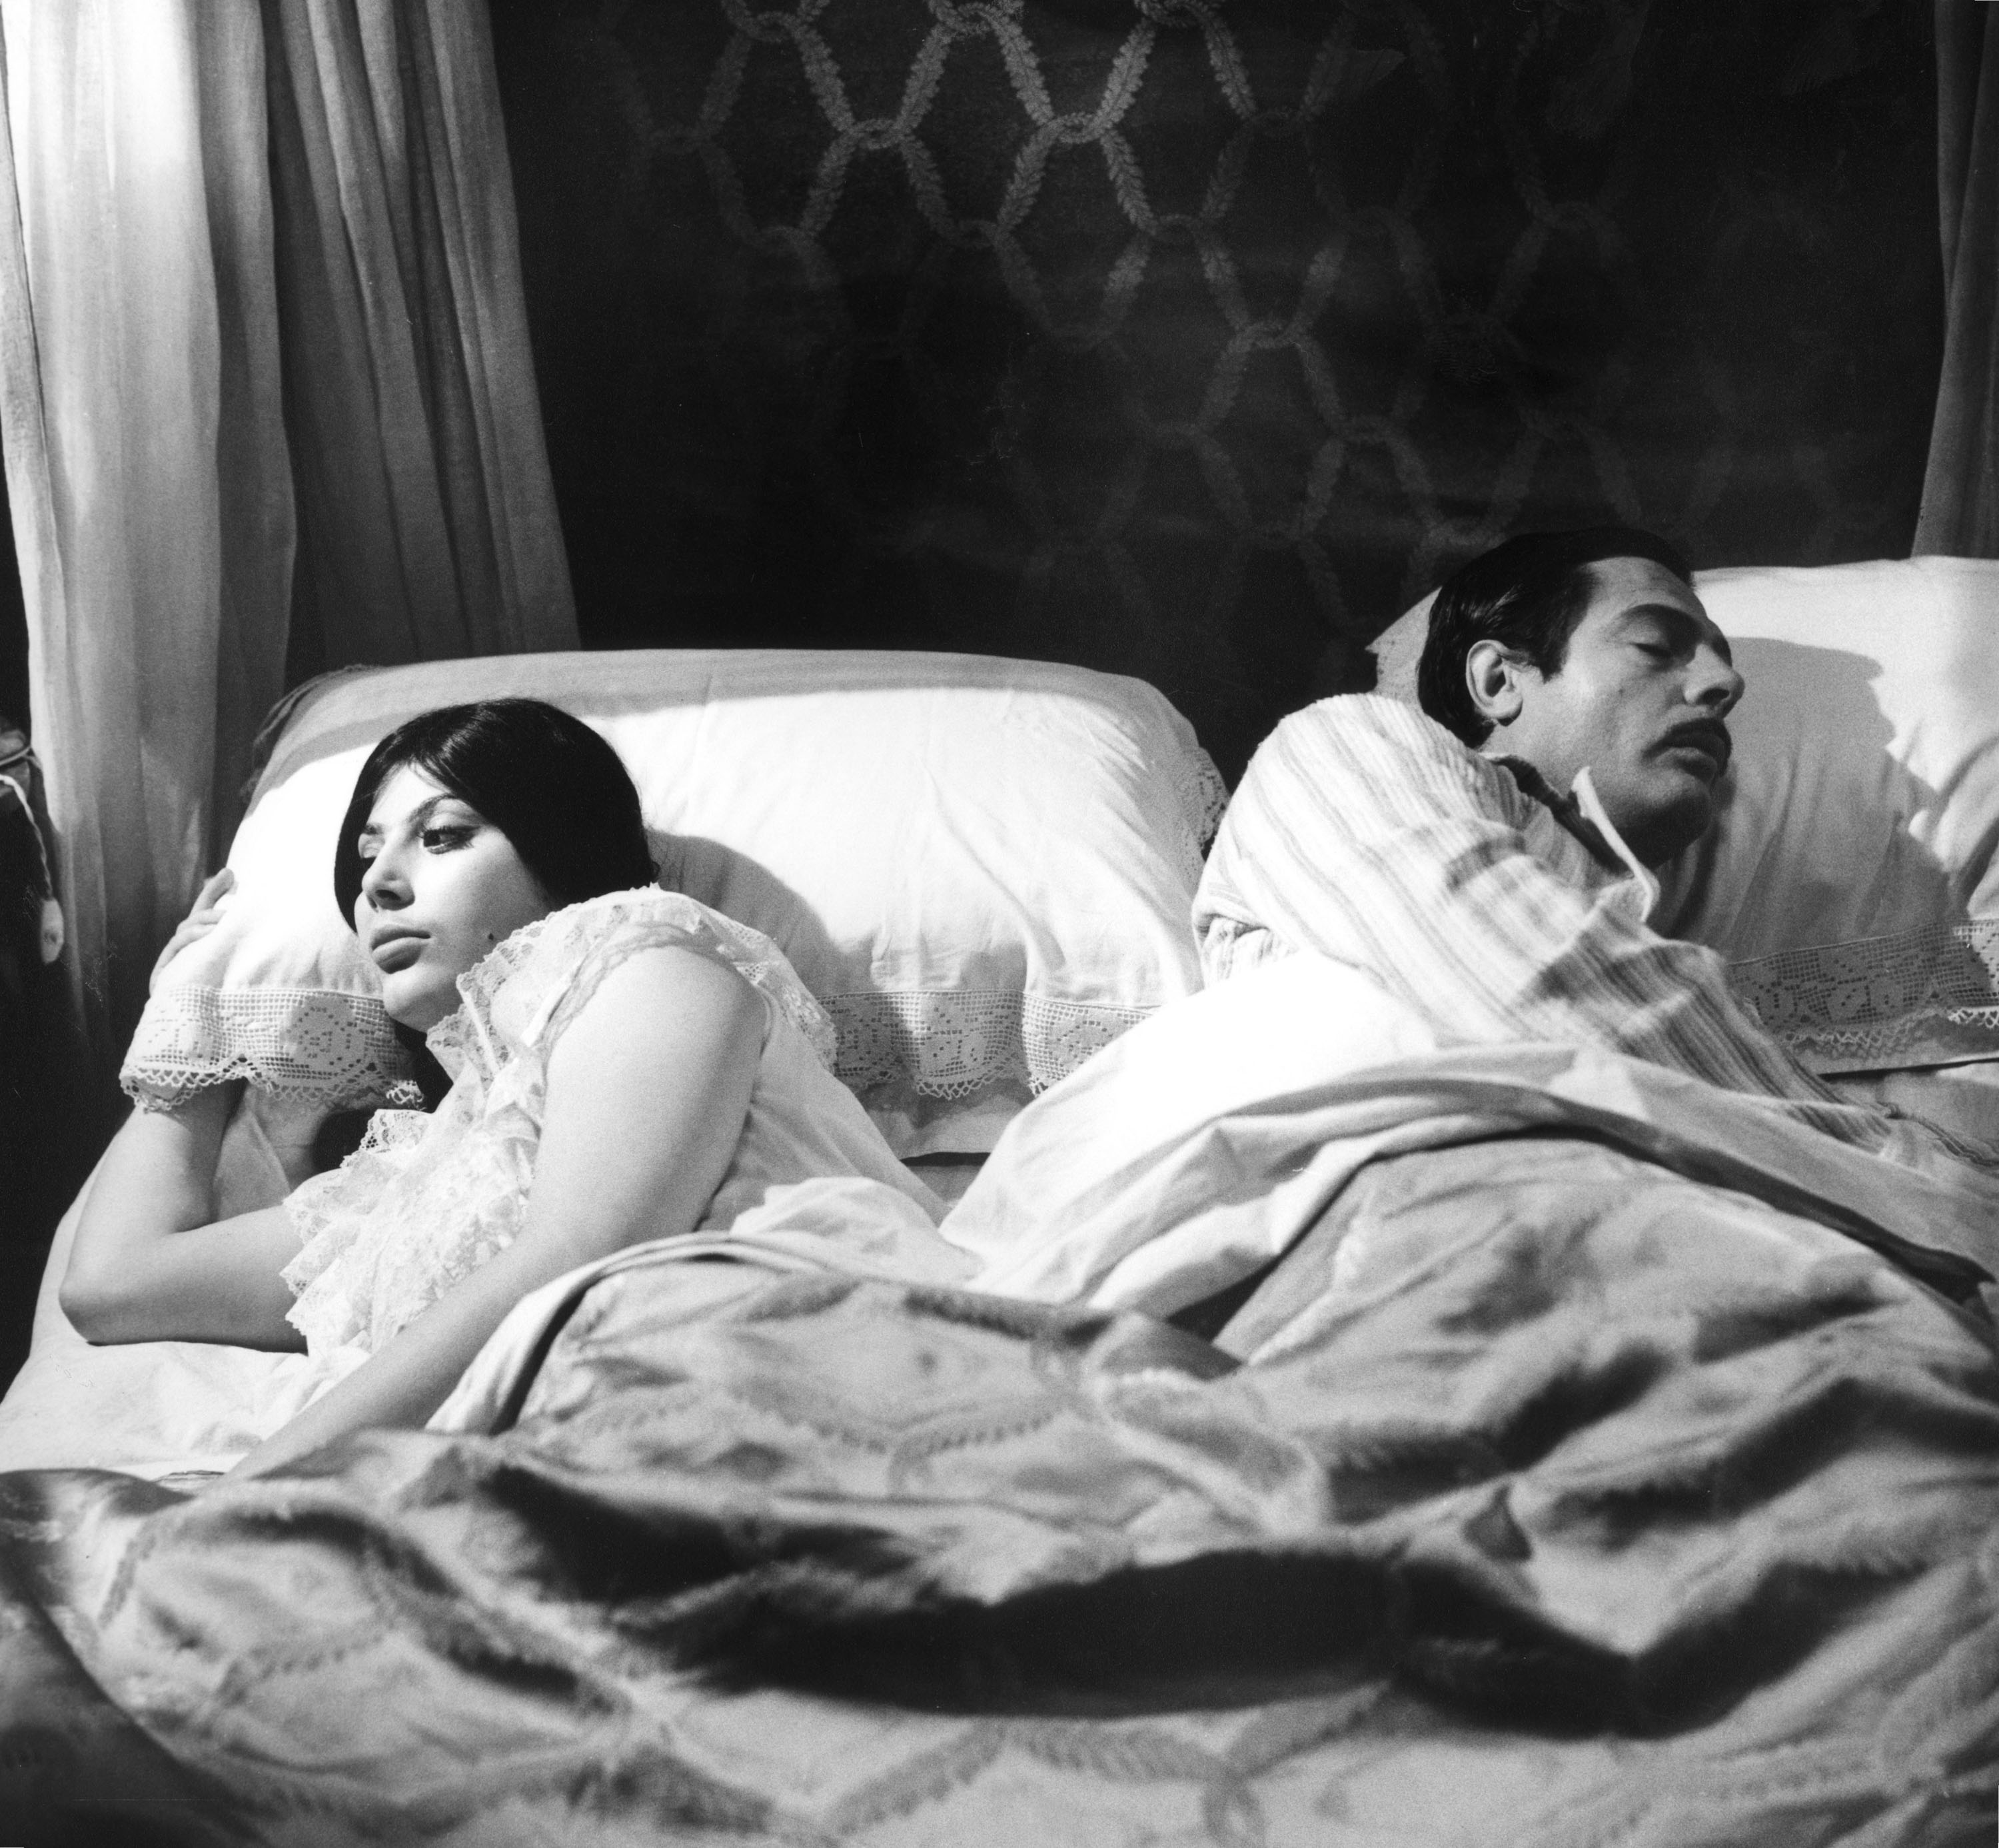 Προβολή της κωμωδίας του Πιέτρο Τζέρμι, Διαζύγιο αλά ιταλικά, από την Κινηματογραφική Λέσχη των εργαζομένων της ΕΡΤ-3 και το ΚΕΜΕΣ